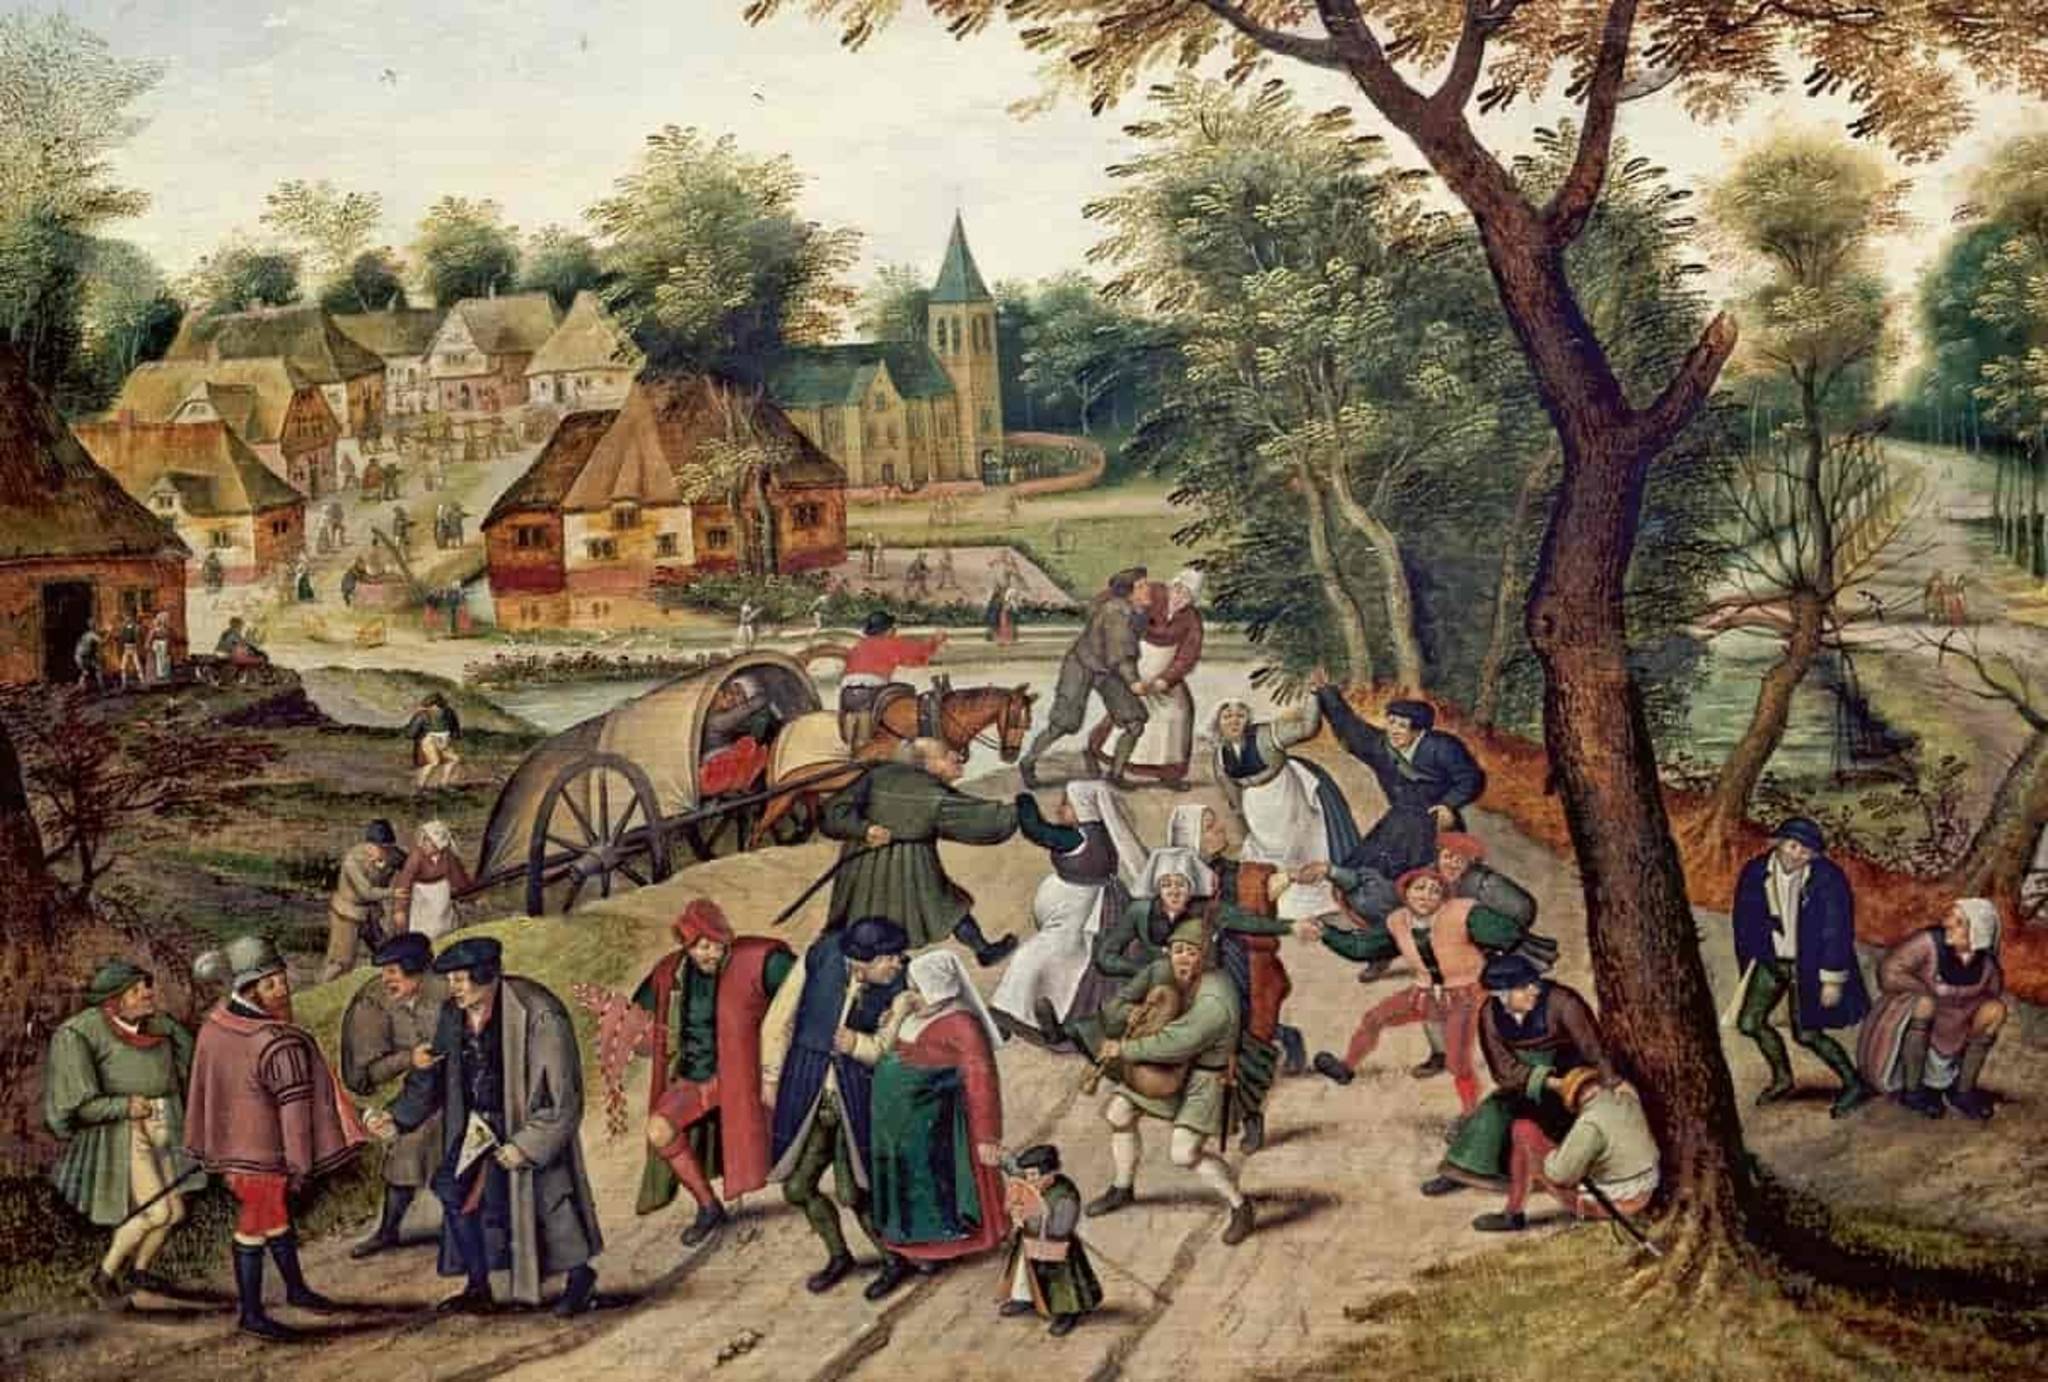 Gemälde von Pieter Brueghel: Zu sehen ist eine mittelalterliche Stadtszene. Menschen tanzen am Rande der Stadt.